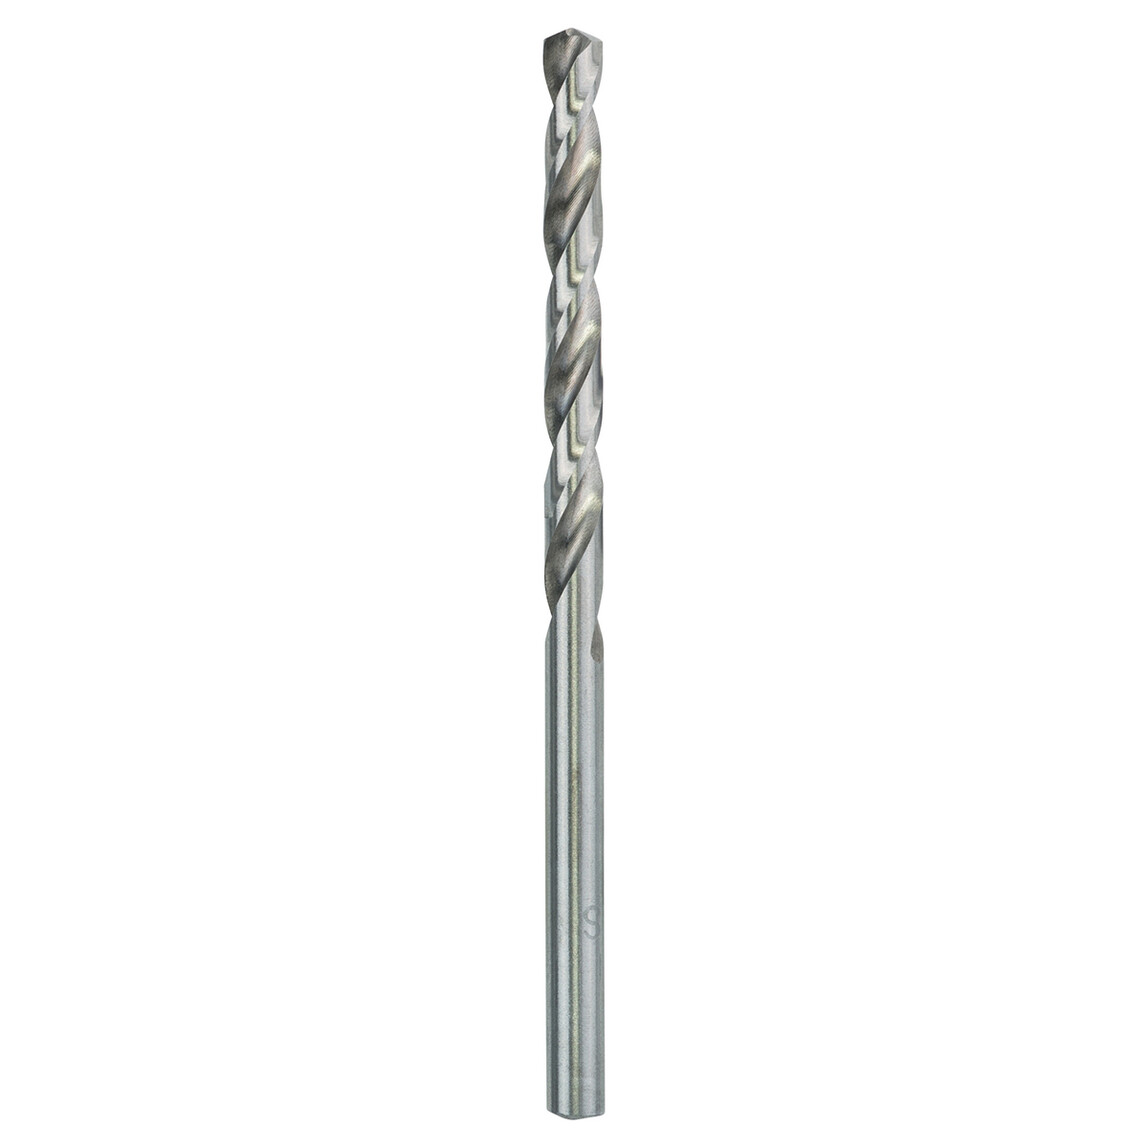    Craftomat HSS-G Metal Matkap Ucu 4.1 mm  